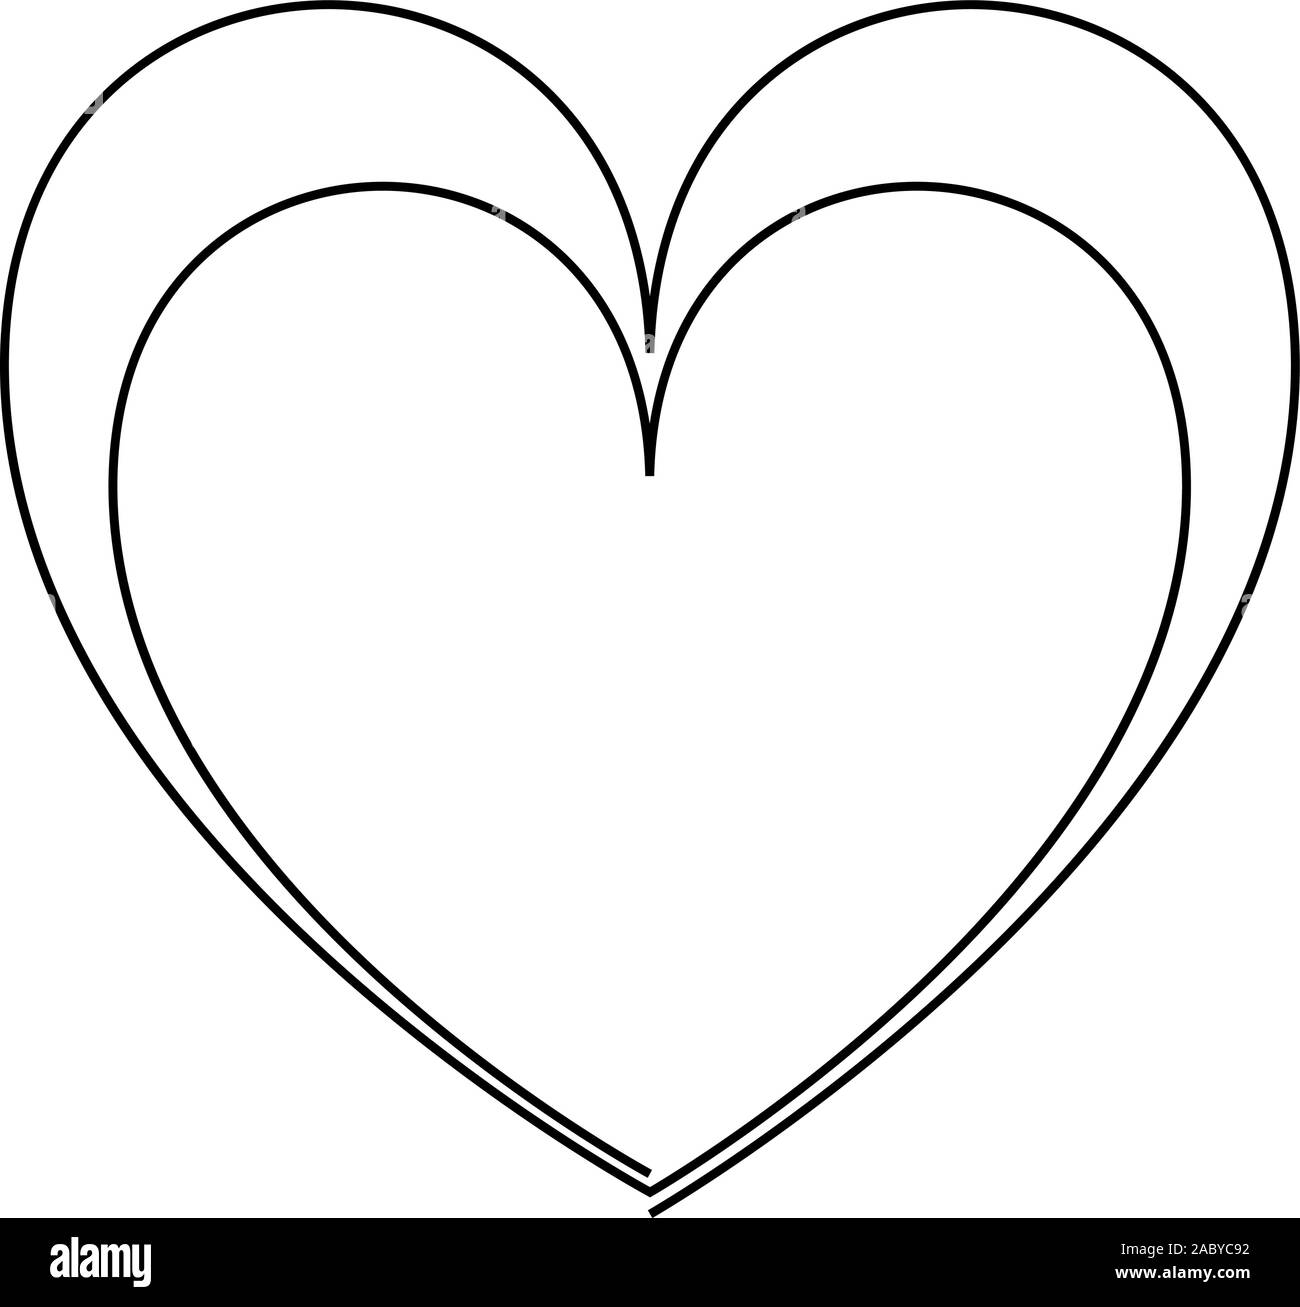 Dessin de ligne continu deux coeurs, noir et blanc illustration minimaliste de l'amour gratuit. Un ou deux coeurs Illustration de Vecteur